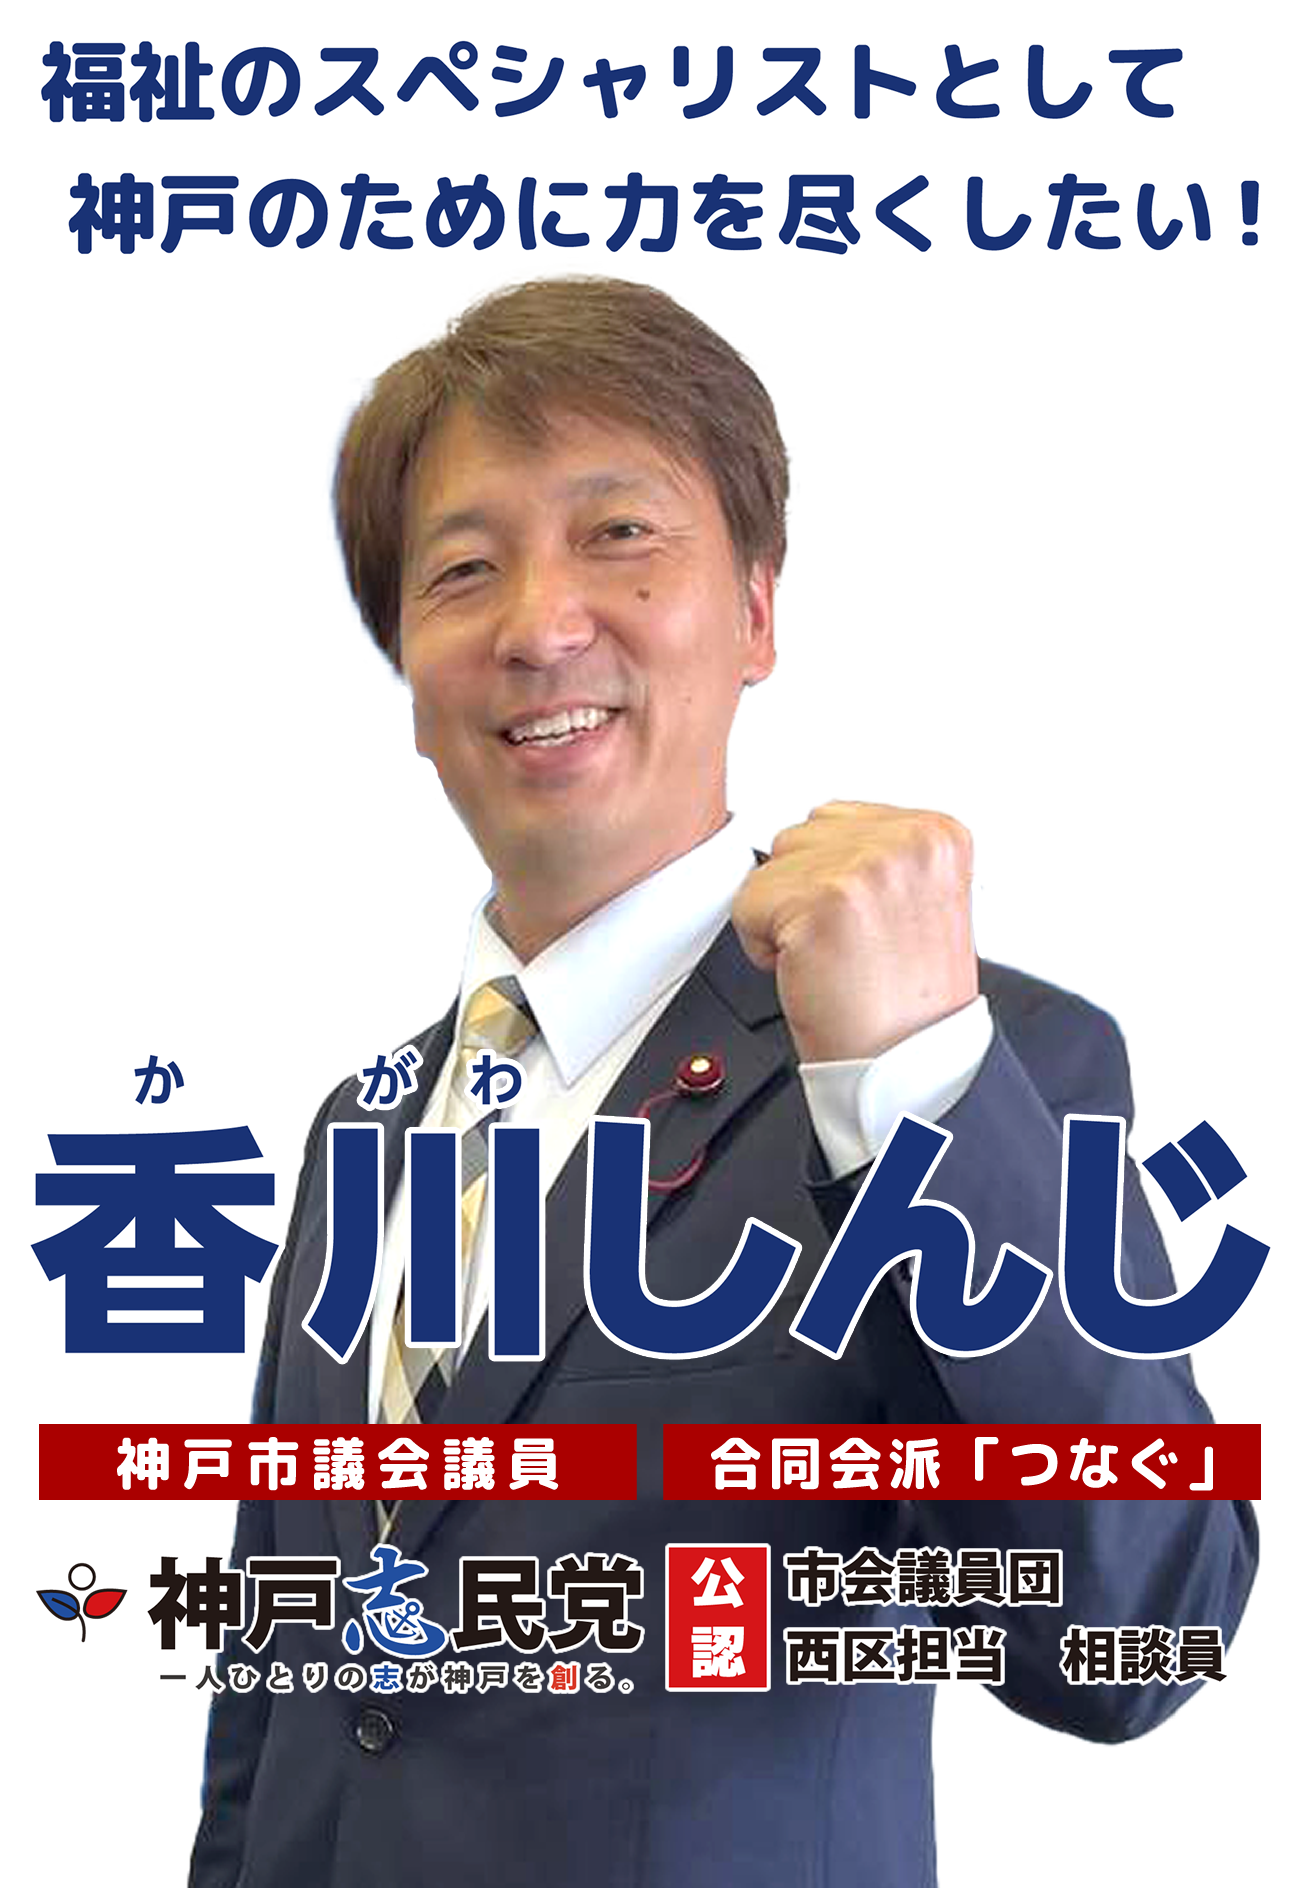 福祉のスペシャリストとして神戸のために力を尽くしたい！神戸志民党・香川真二(神戸市議会議員/神戸市西区)